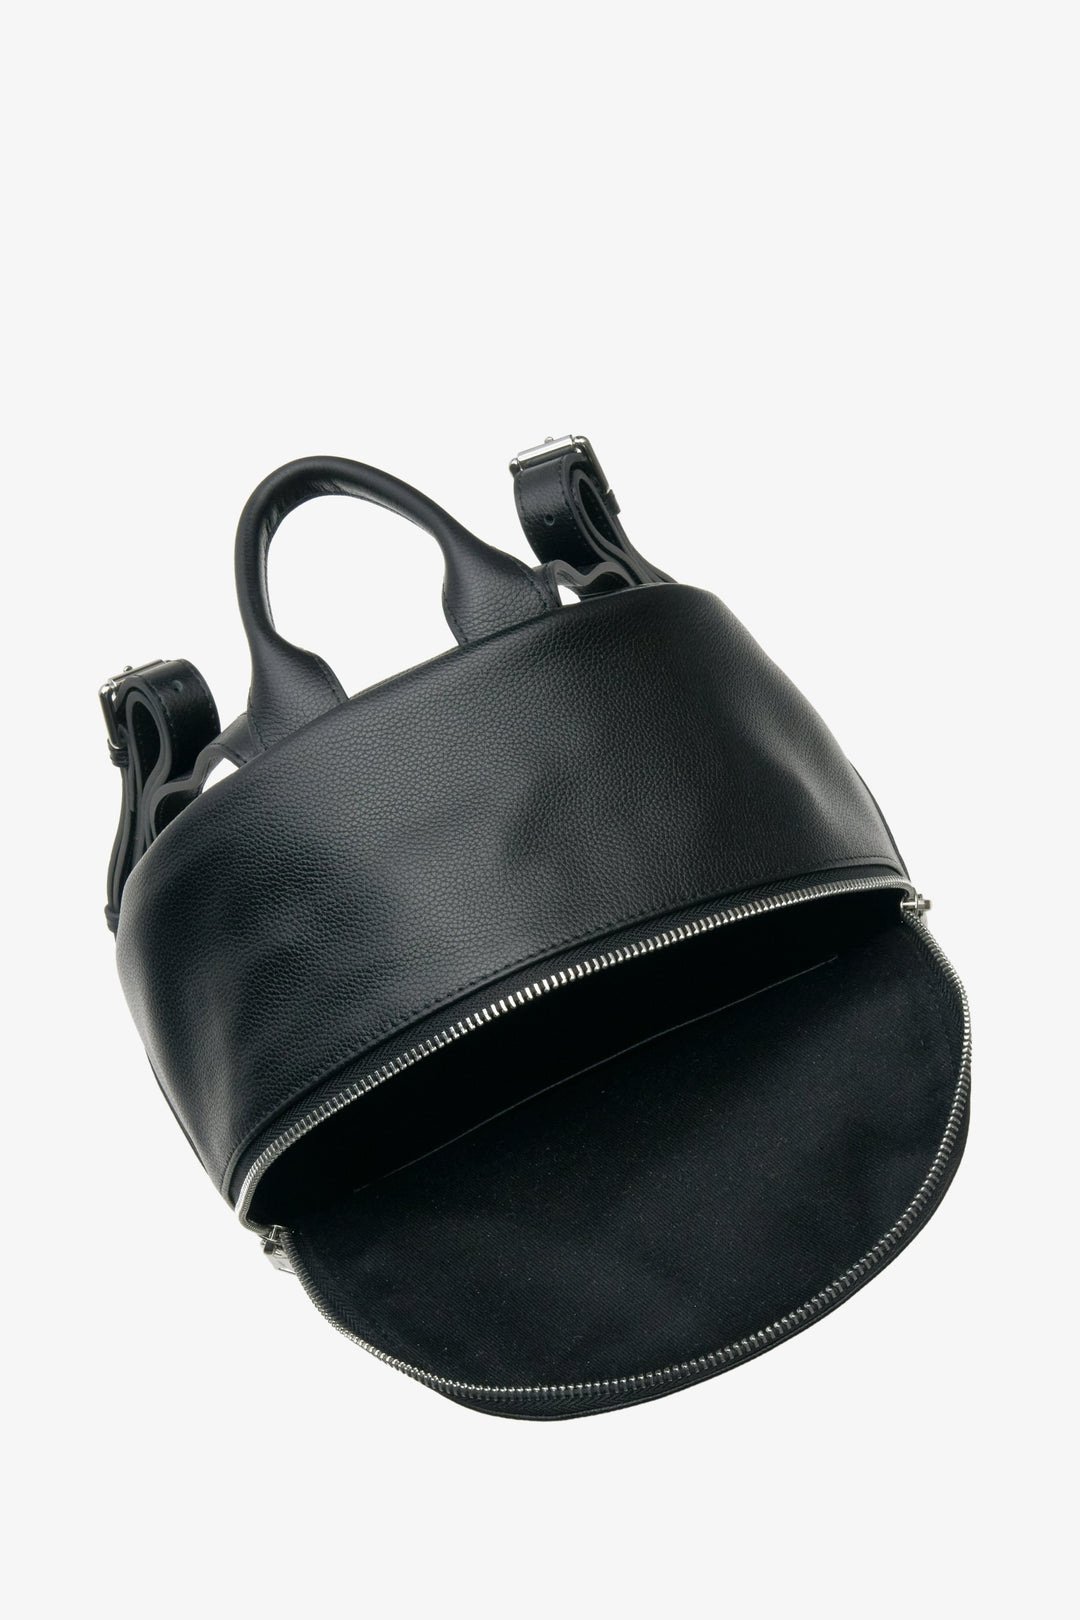 Skórzany czarny plecak Estro - zbliżenie na wnętrze modelu.